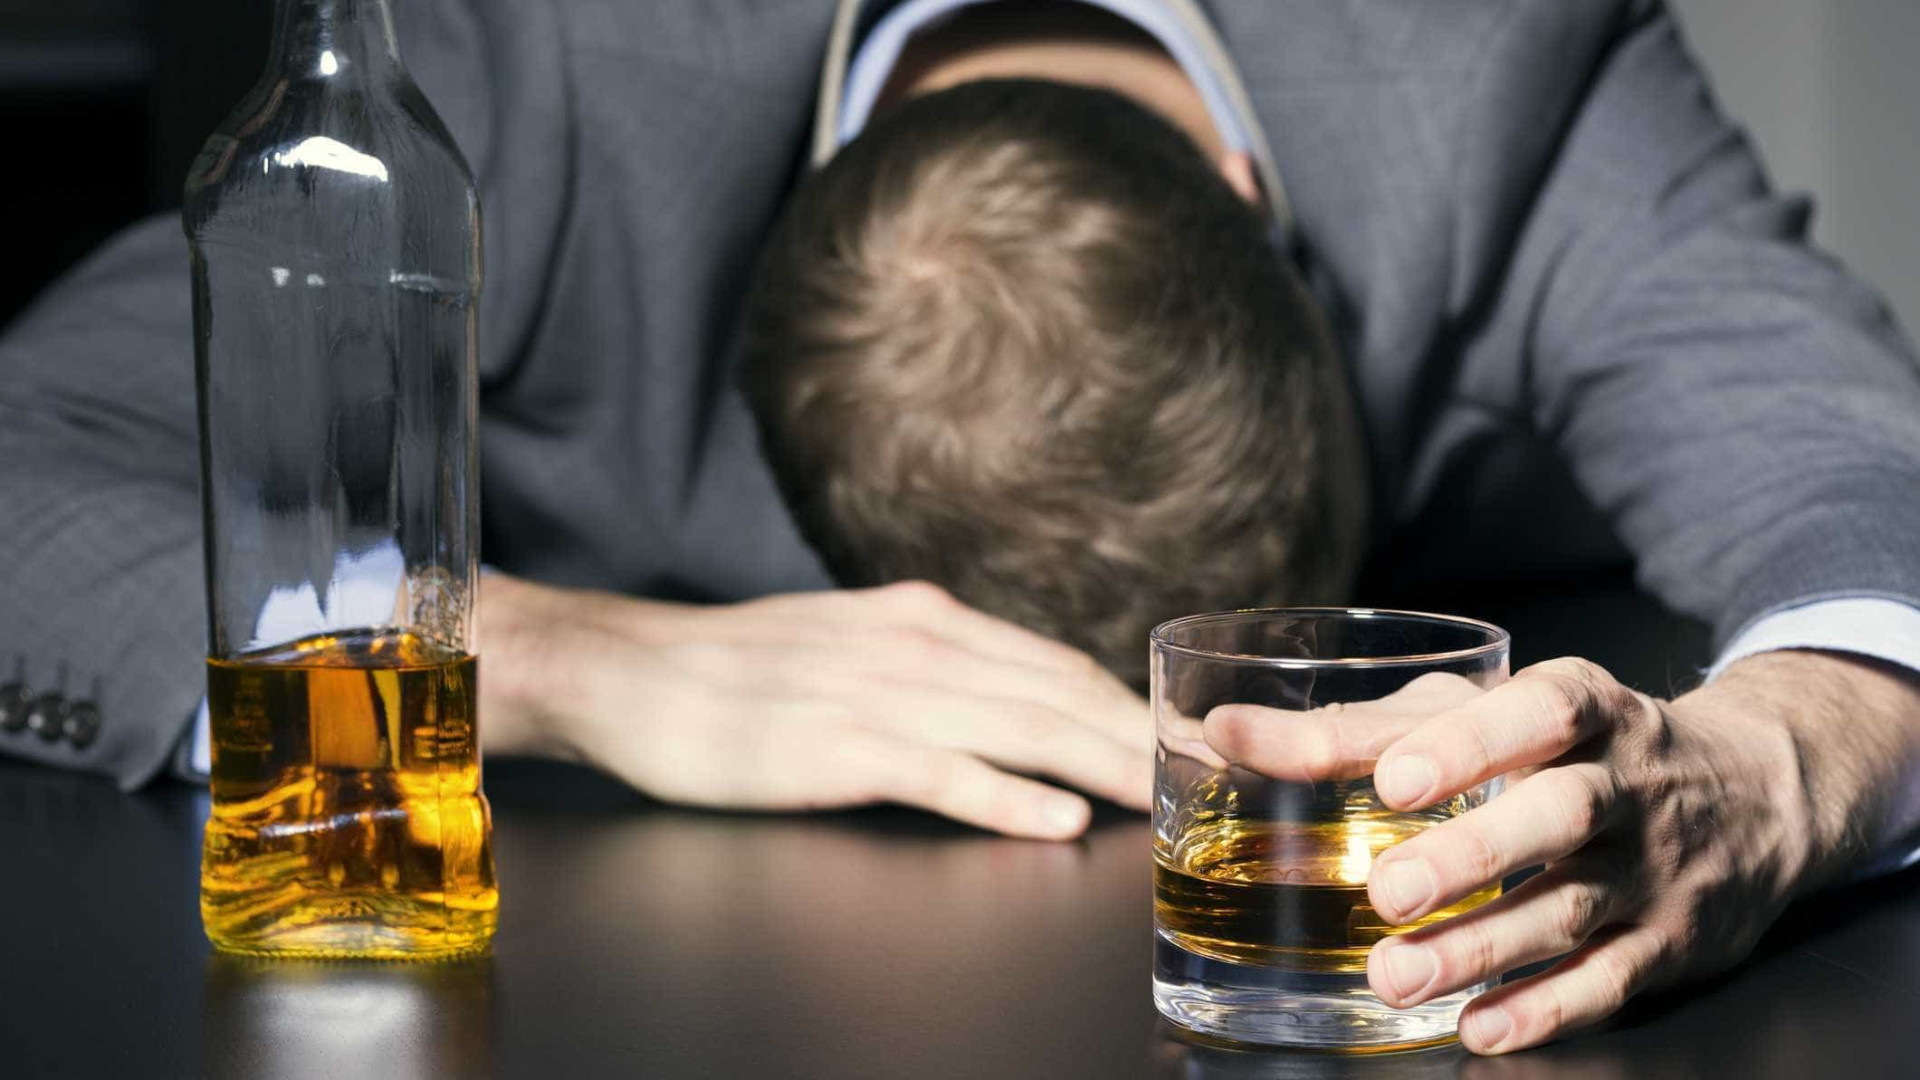 Há quatro tipos de pessoas que bebem álcool. Qual deles você é?